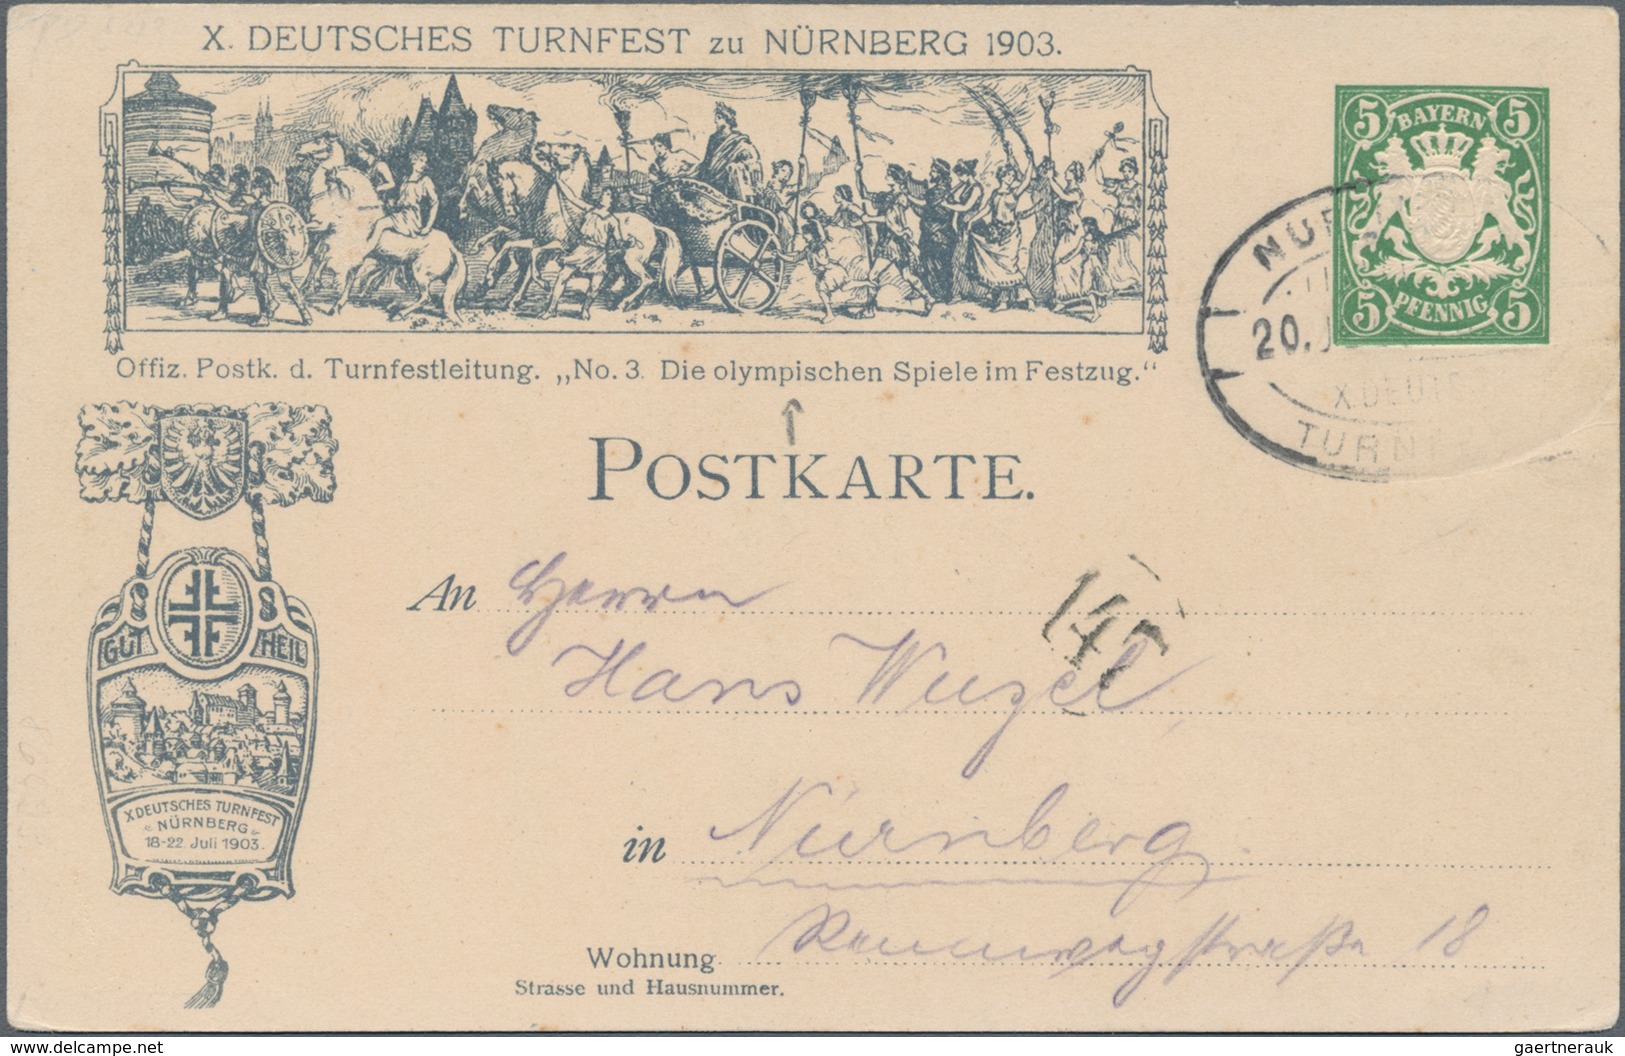 Ansichtskarten: Deutschland: 1890er-1920 ca.: Mehr als 200 Ansichtskarten aus den damals deutschen G